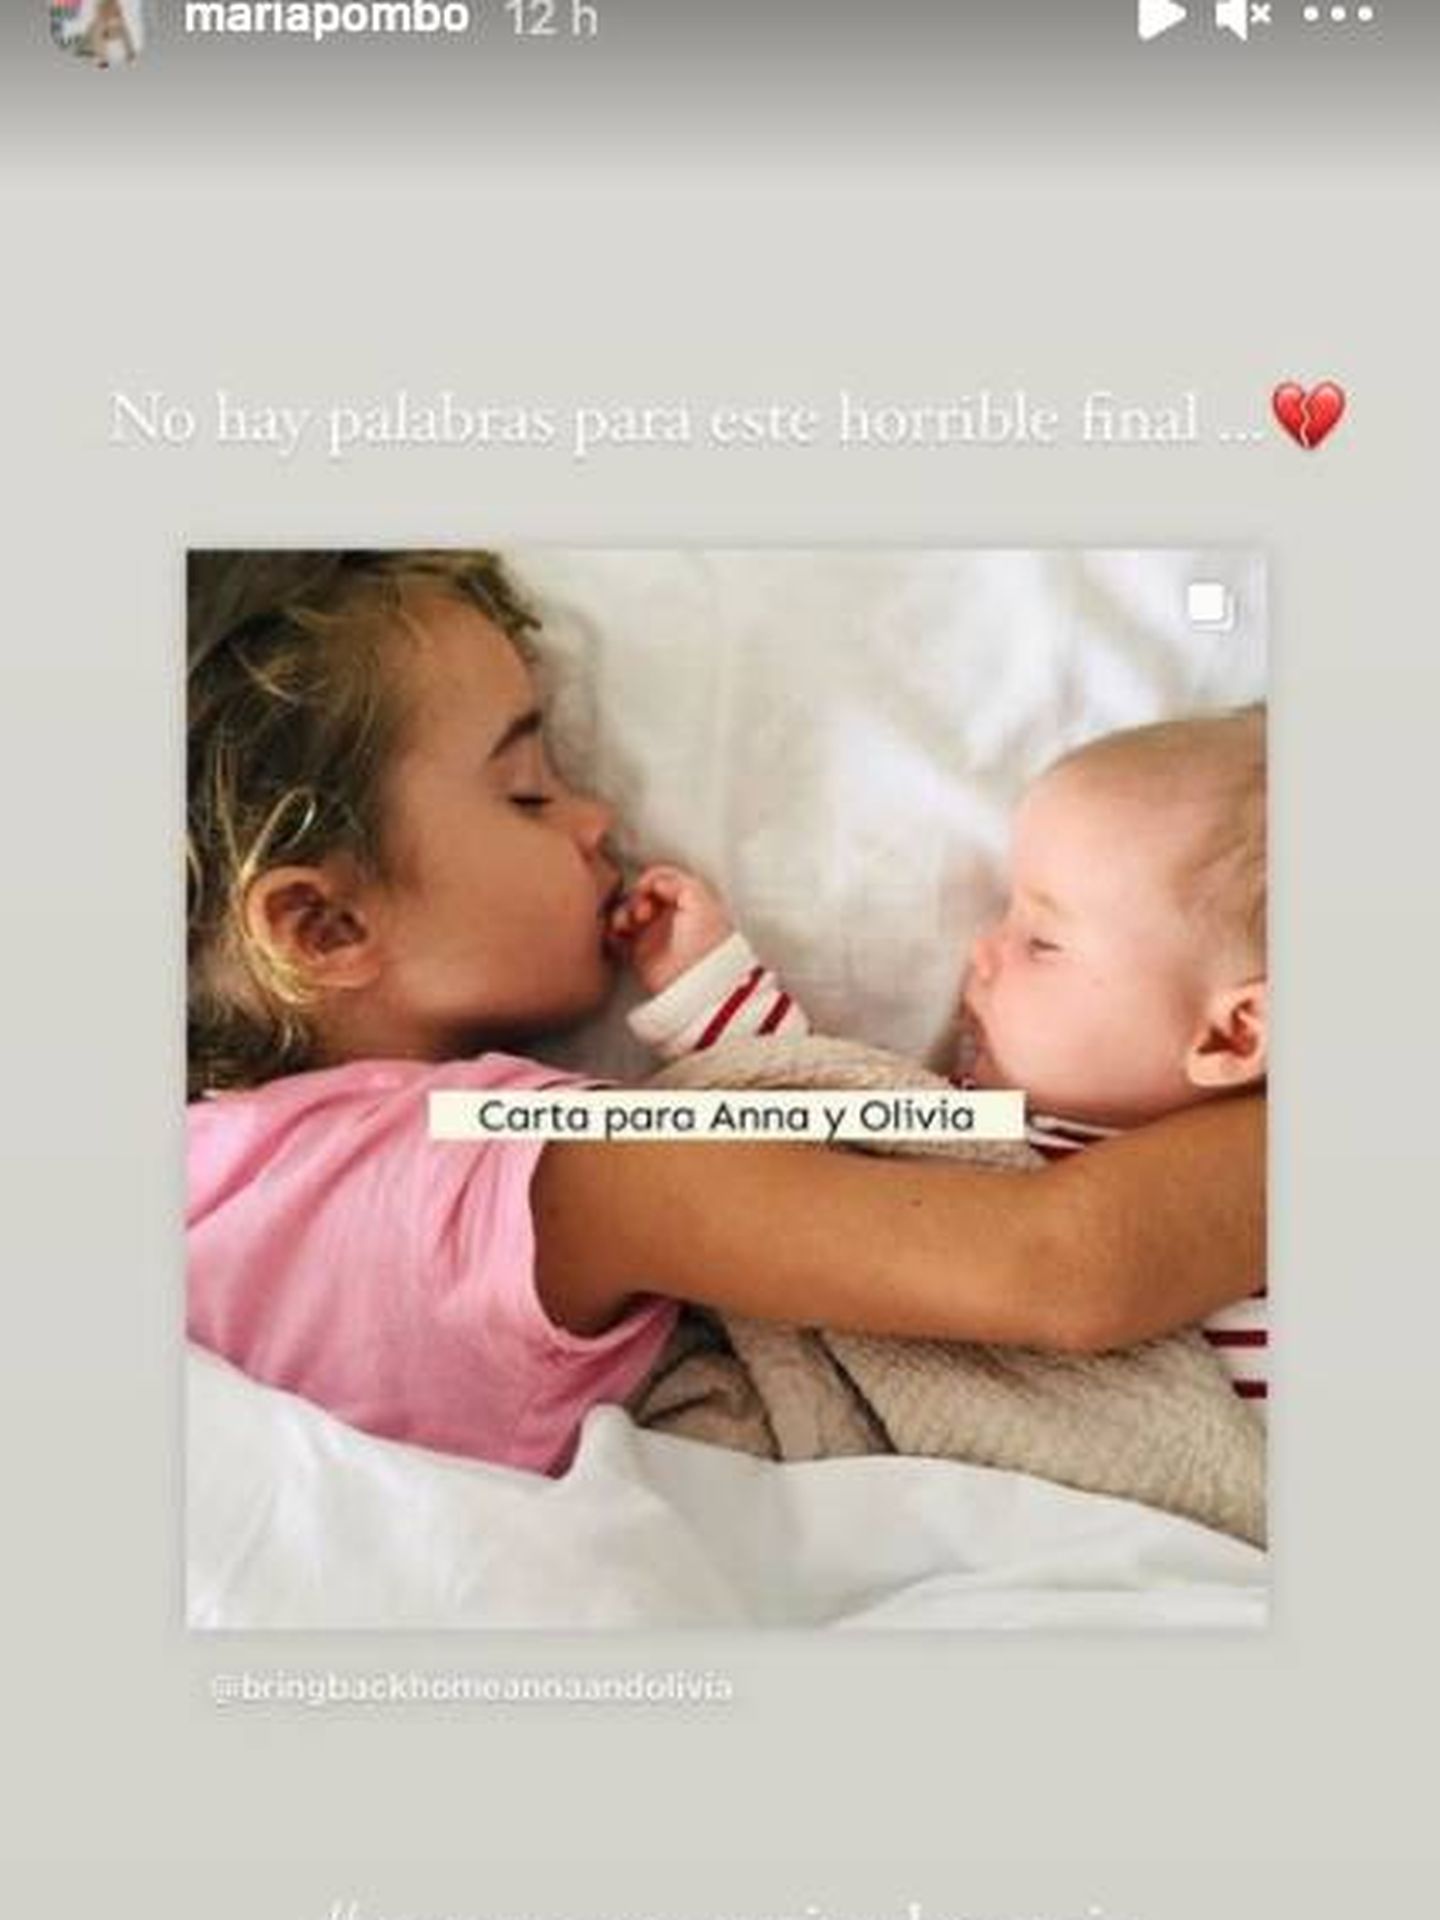 El recuerdo a las niñas de María Pombo. (Instagram @mariapombo) 